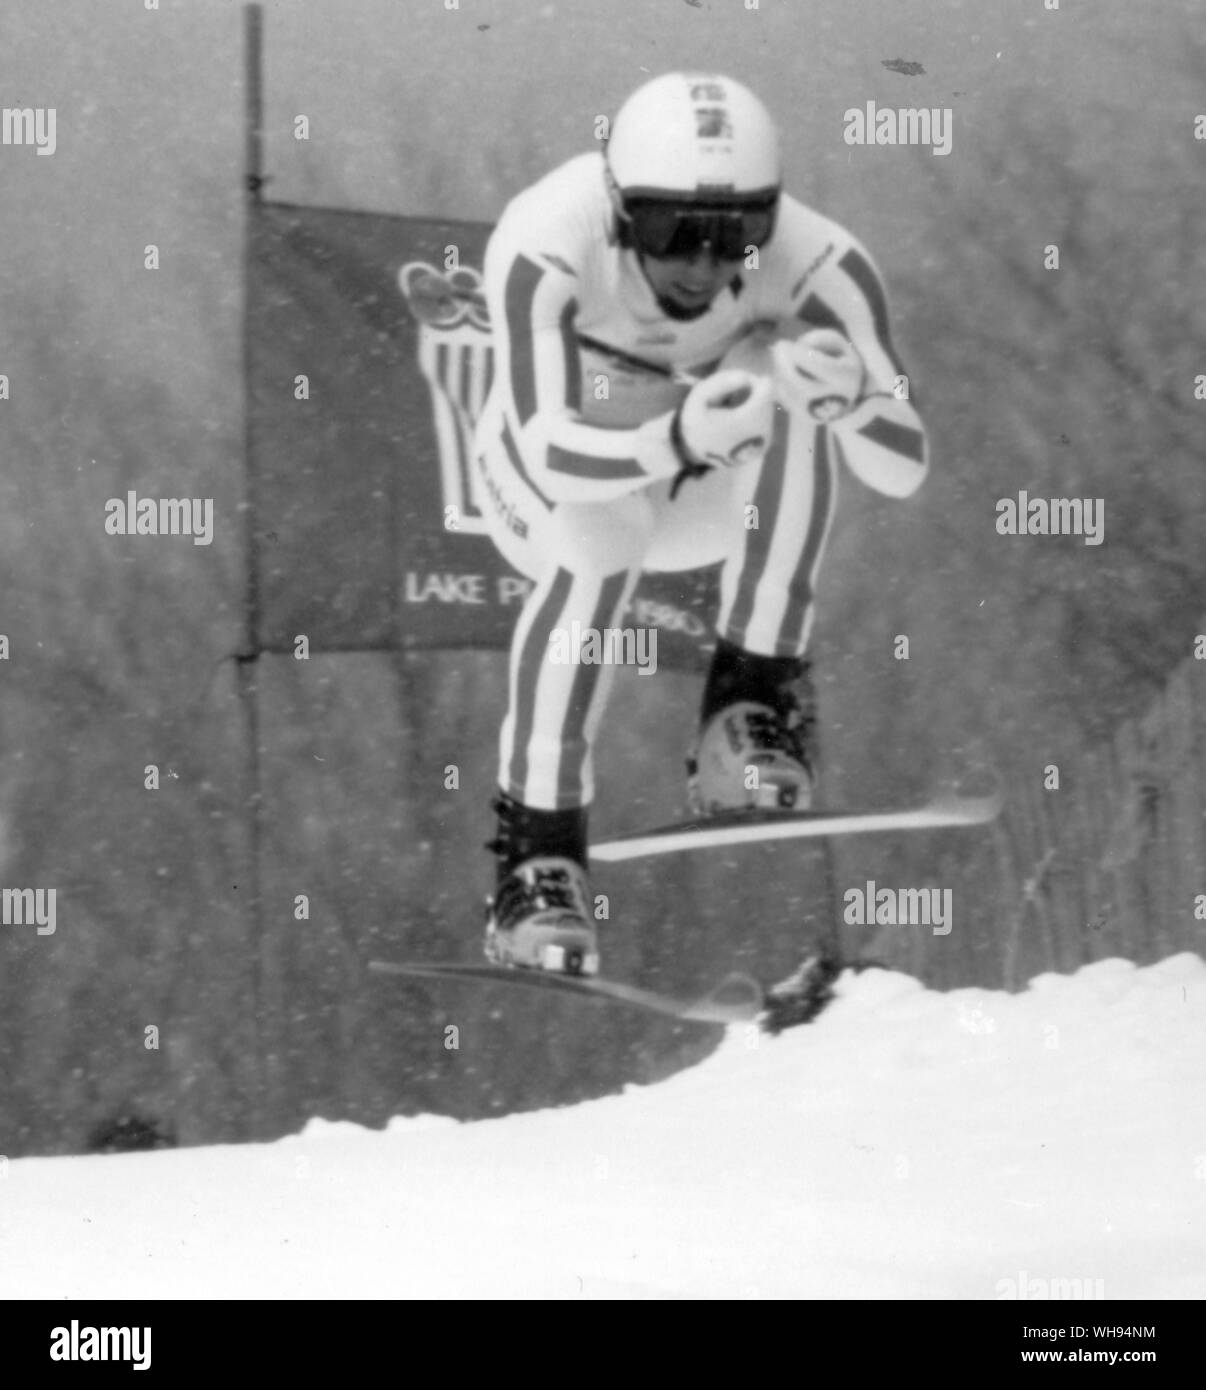 1980 Winter Olympics - Lake Placid, USA. Leonhard Stock (Österreich) dargestellt in der Mens Alpine Ski Event auf seine Weise die Goldmedaille zu gewinnen. 14. Februar 1980. Stockfoto